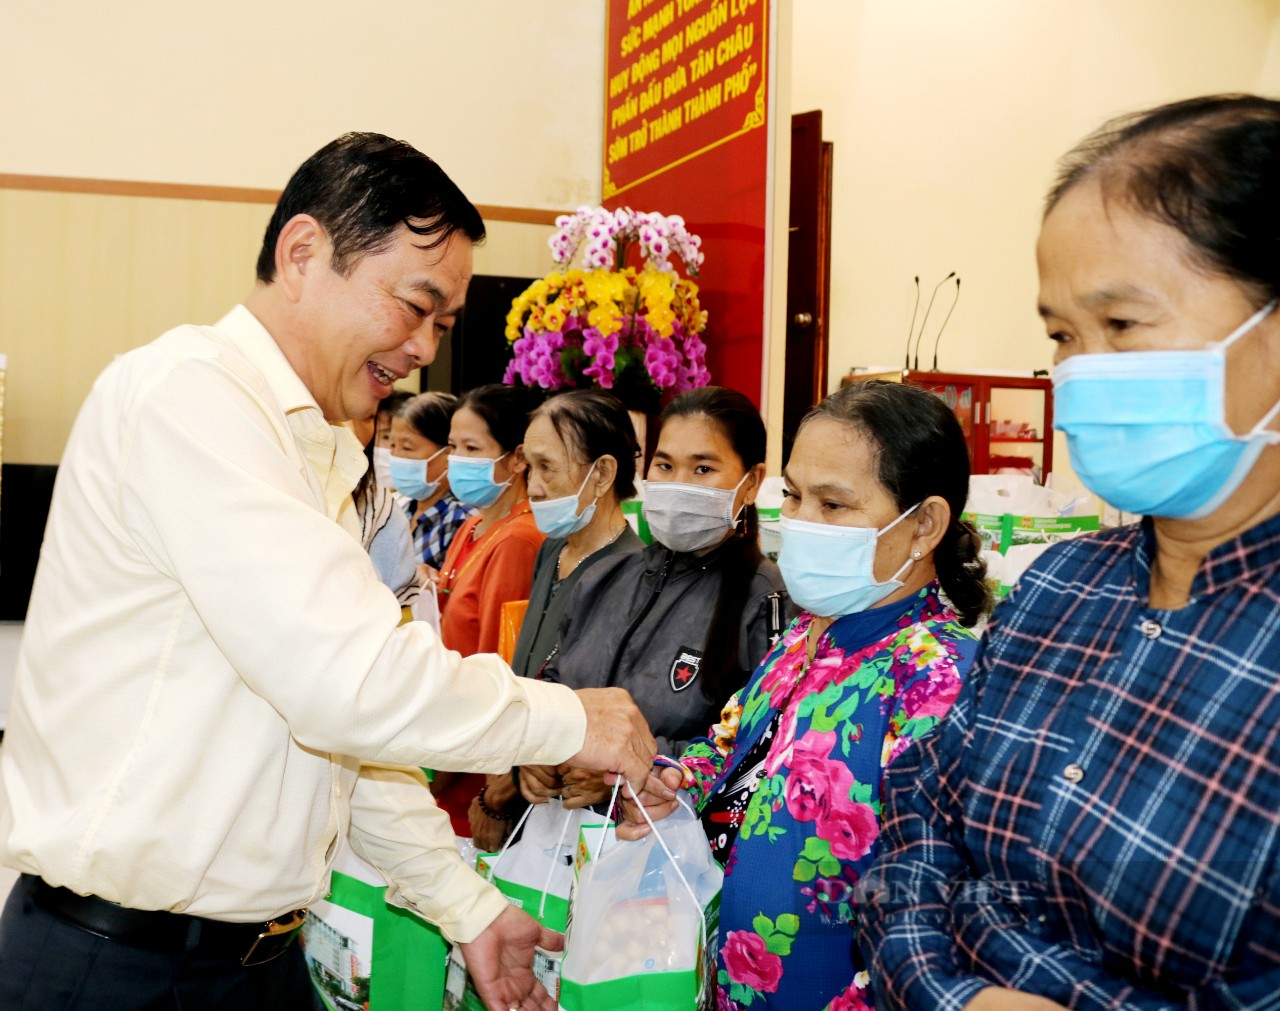 Trao quà Tết của Chủ tịch Hội Nông dân Việt Nam cho bà con nhân dân tại An Giang - Ảnh 2.